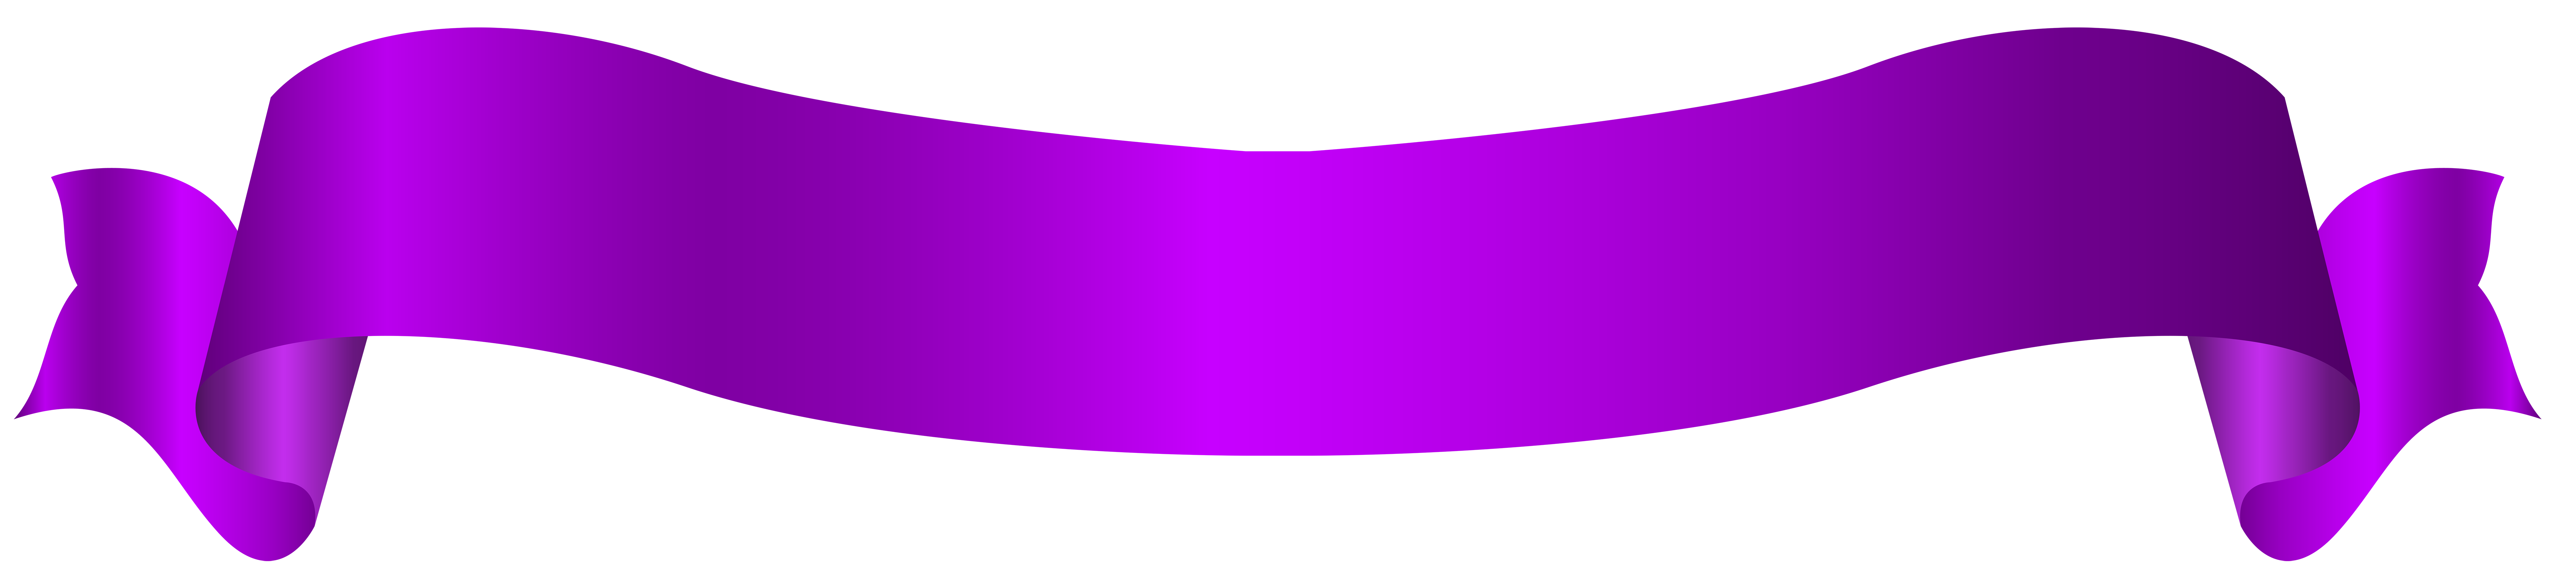 Фиолетовый баннер PNG Image